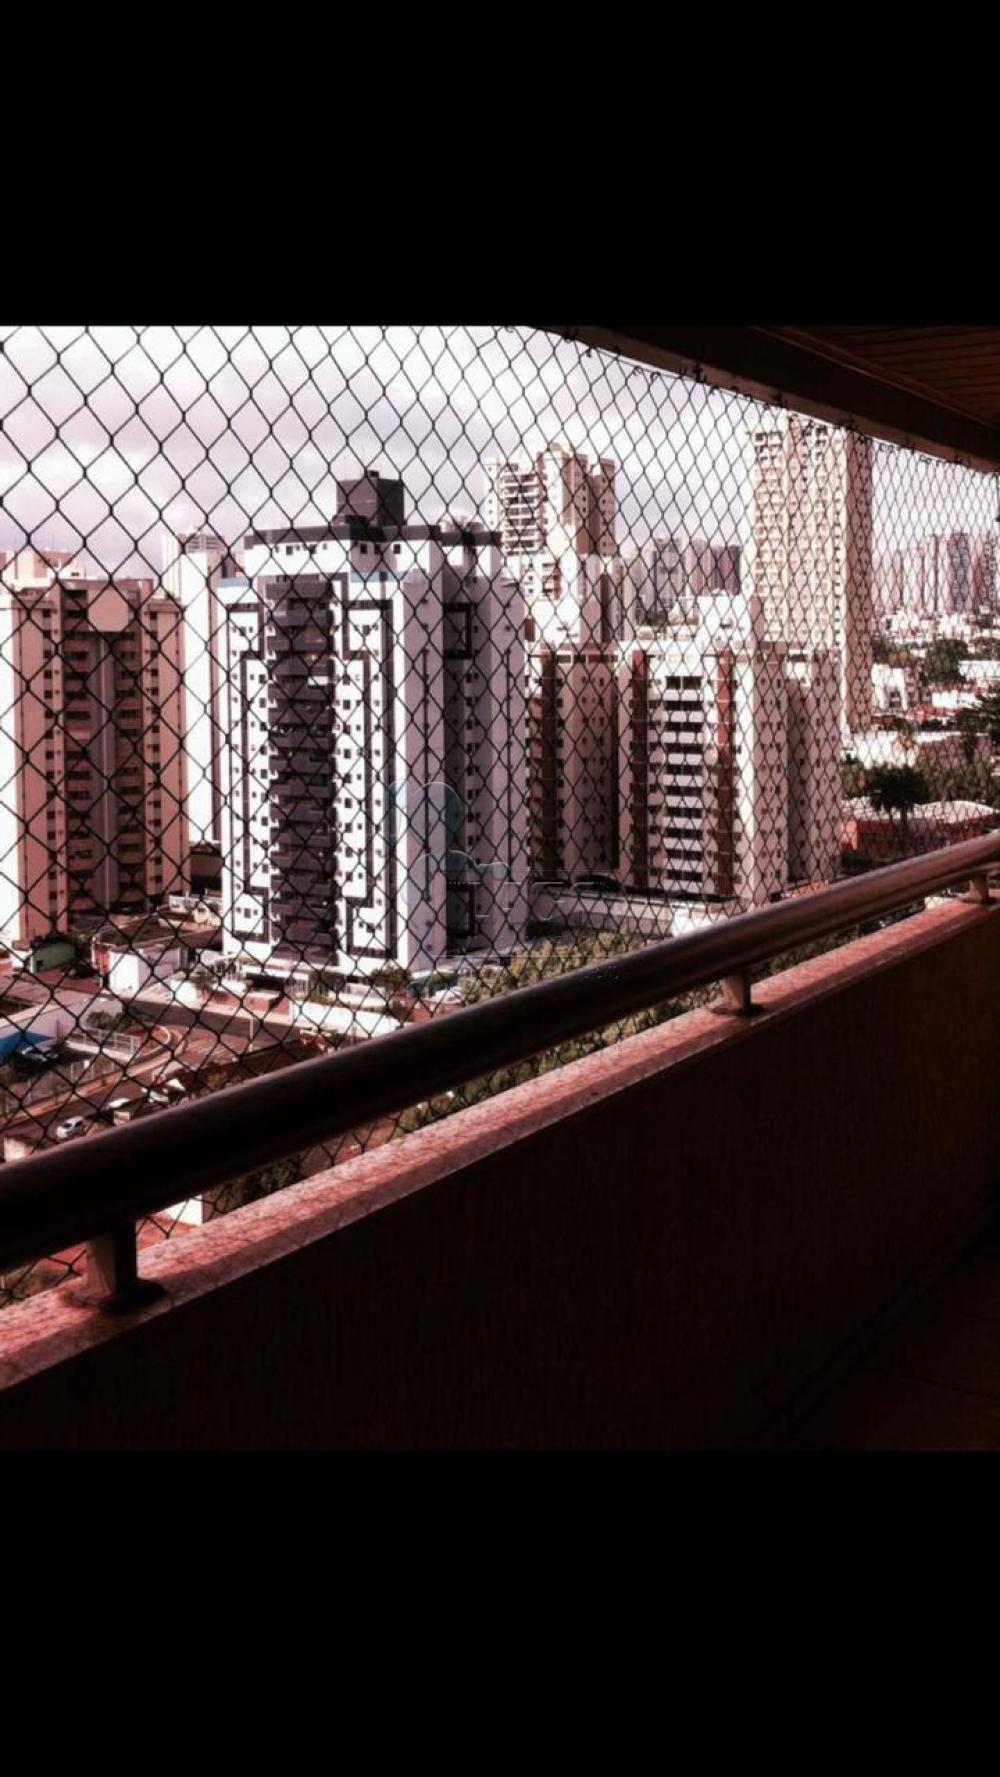 Alugar Apartamentos / Padrão em Ribeirão Preto R$ 2.200,00 - Foto 10